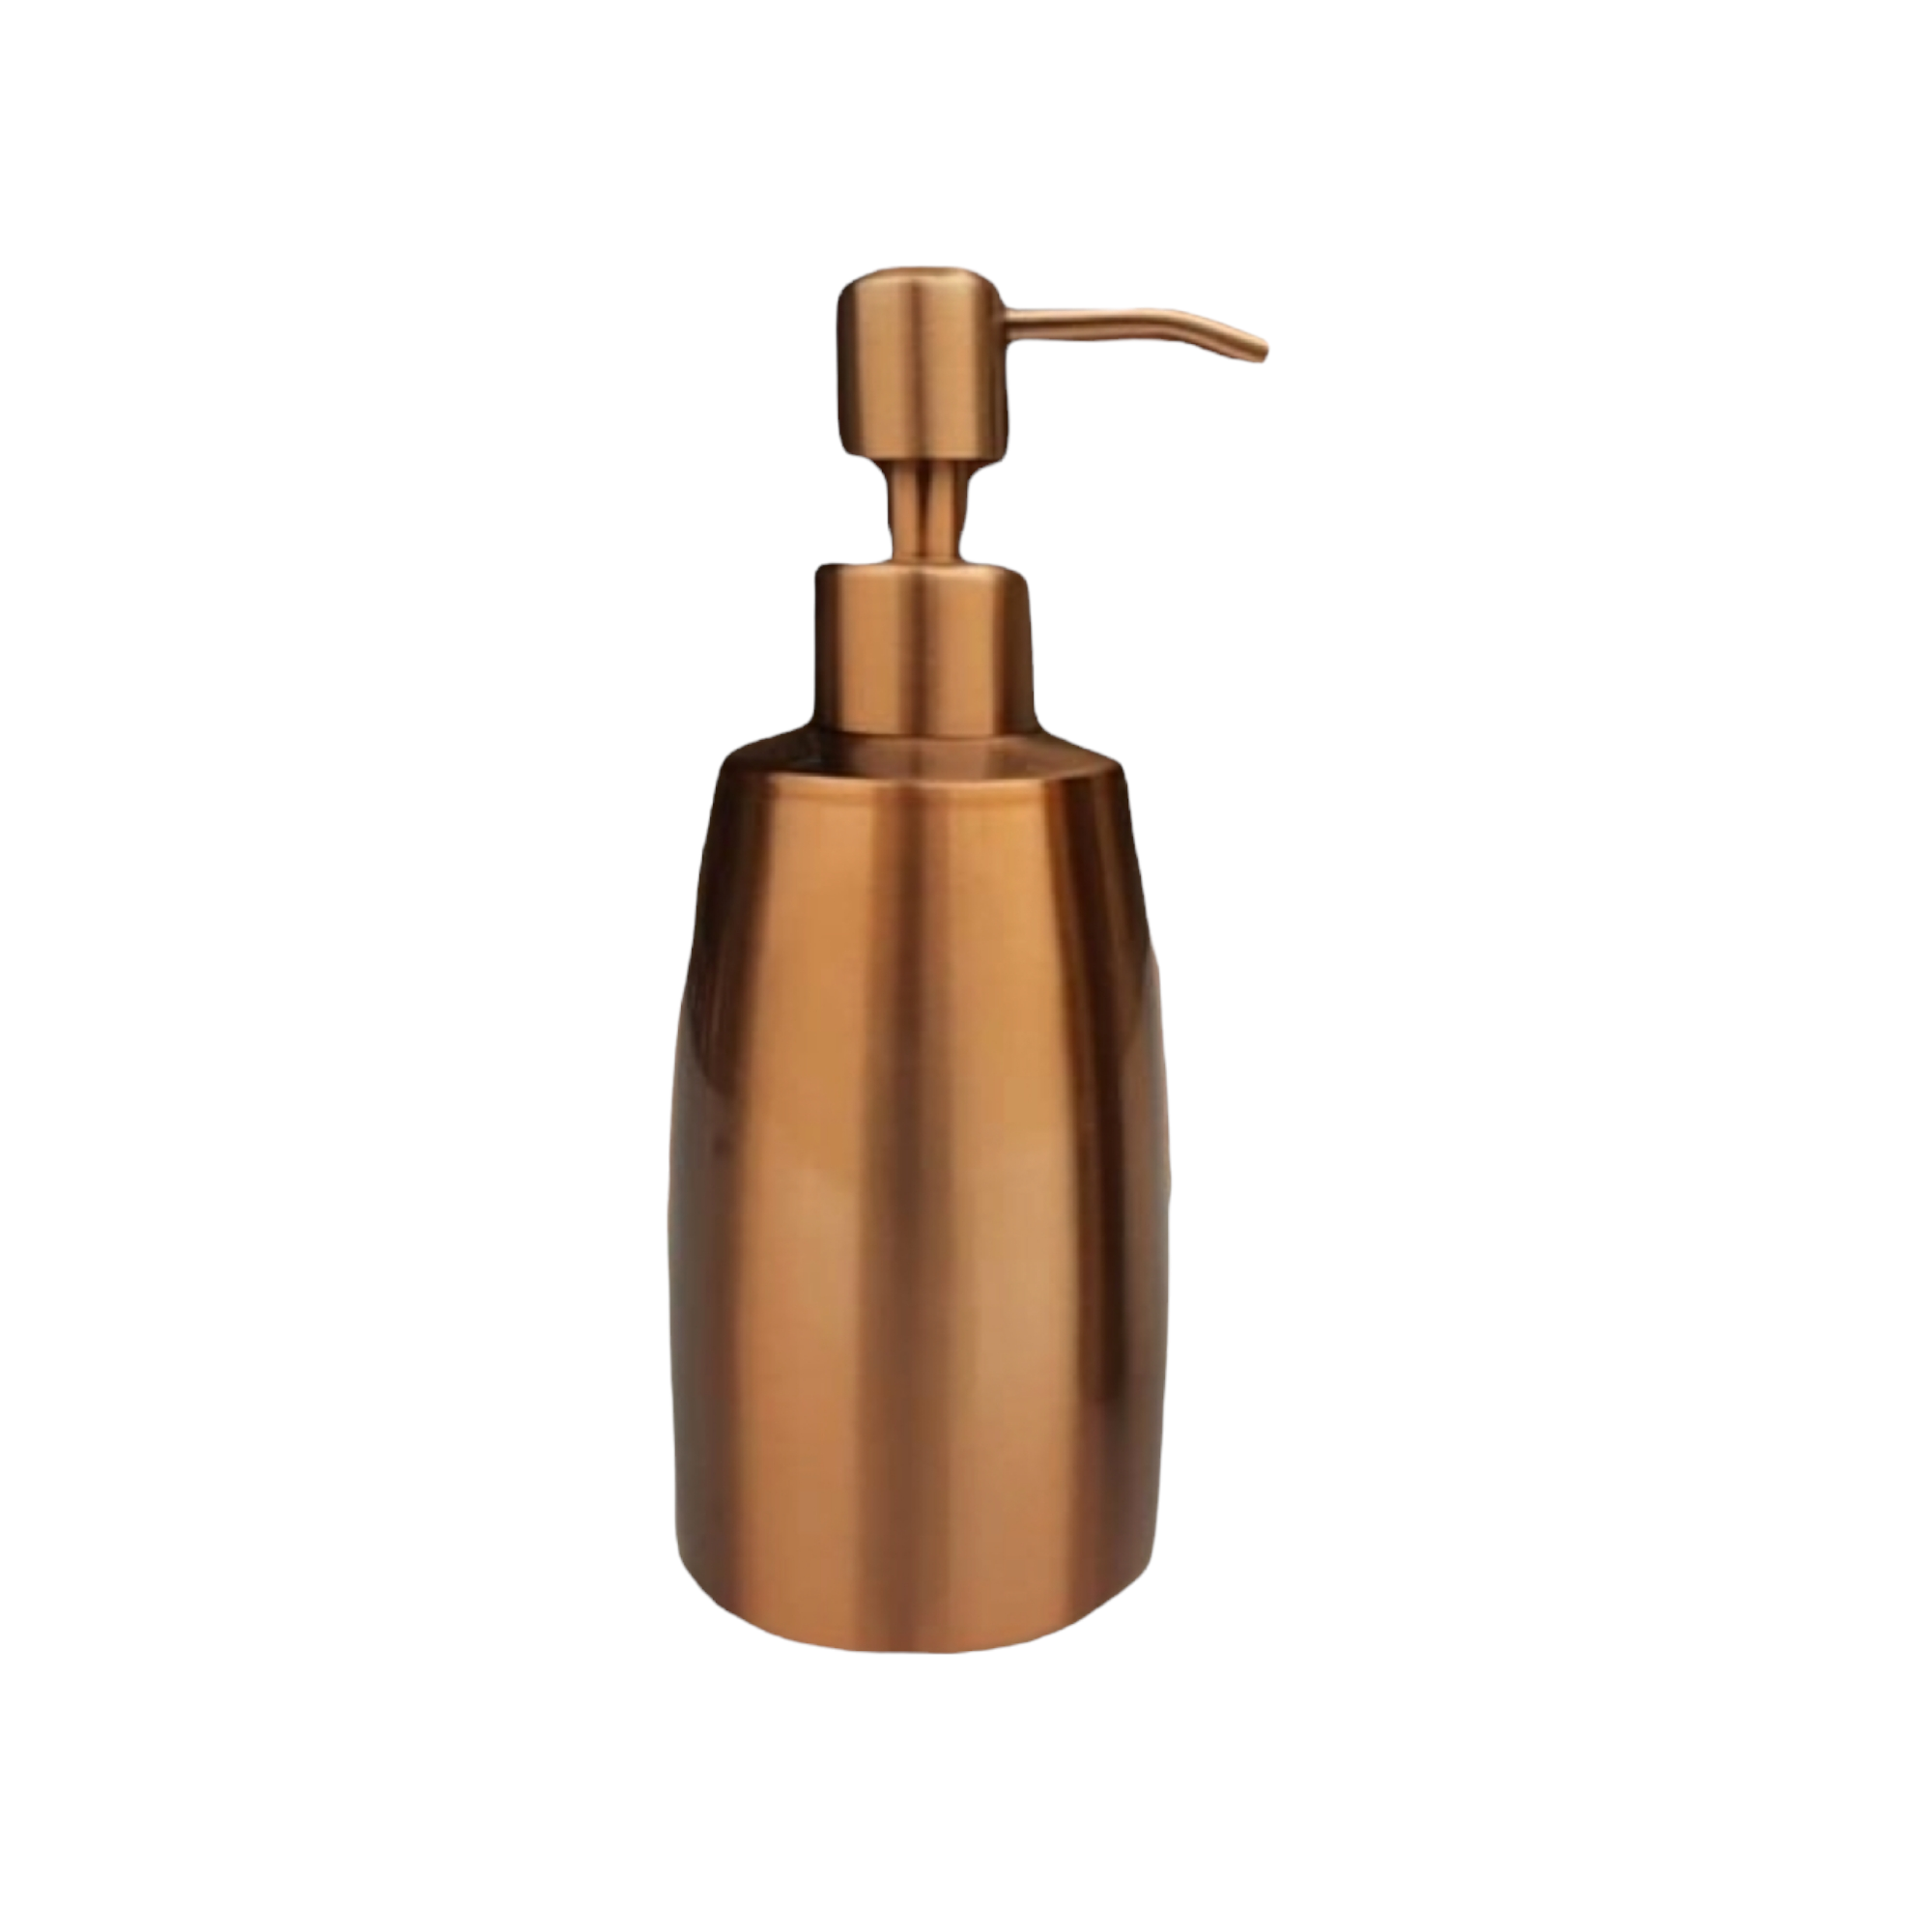 Liquid Hand Soap Dispenser 300ml Rose Gold Stainless Steel 057